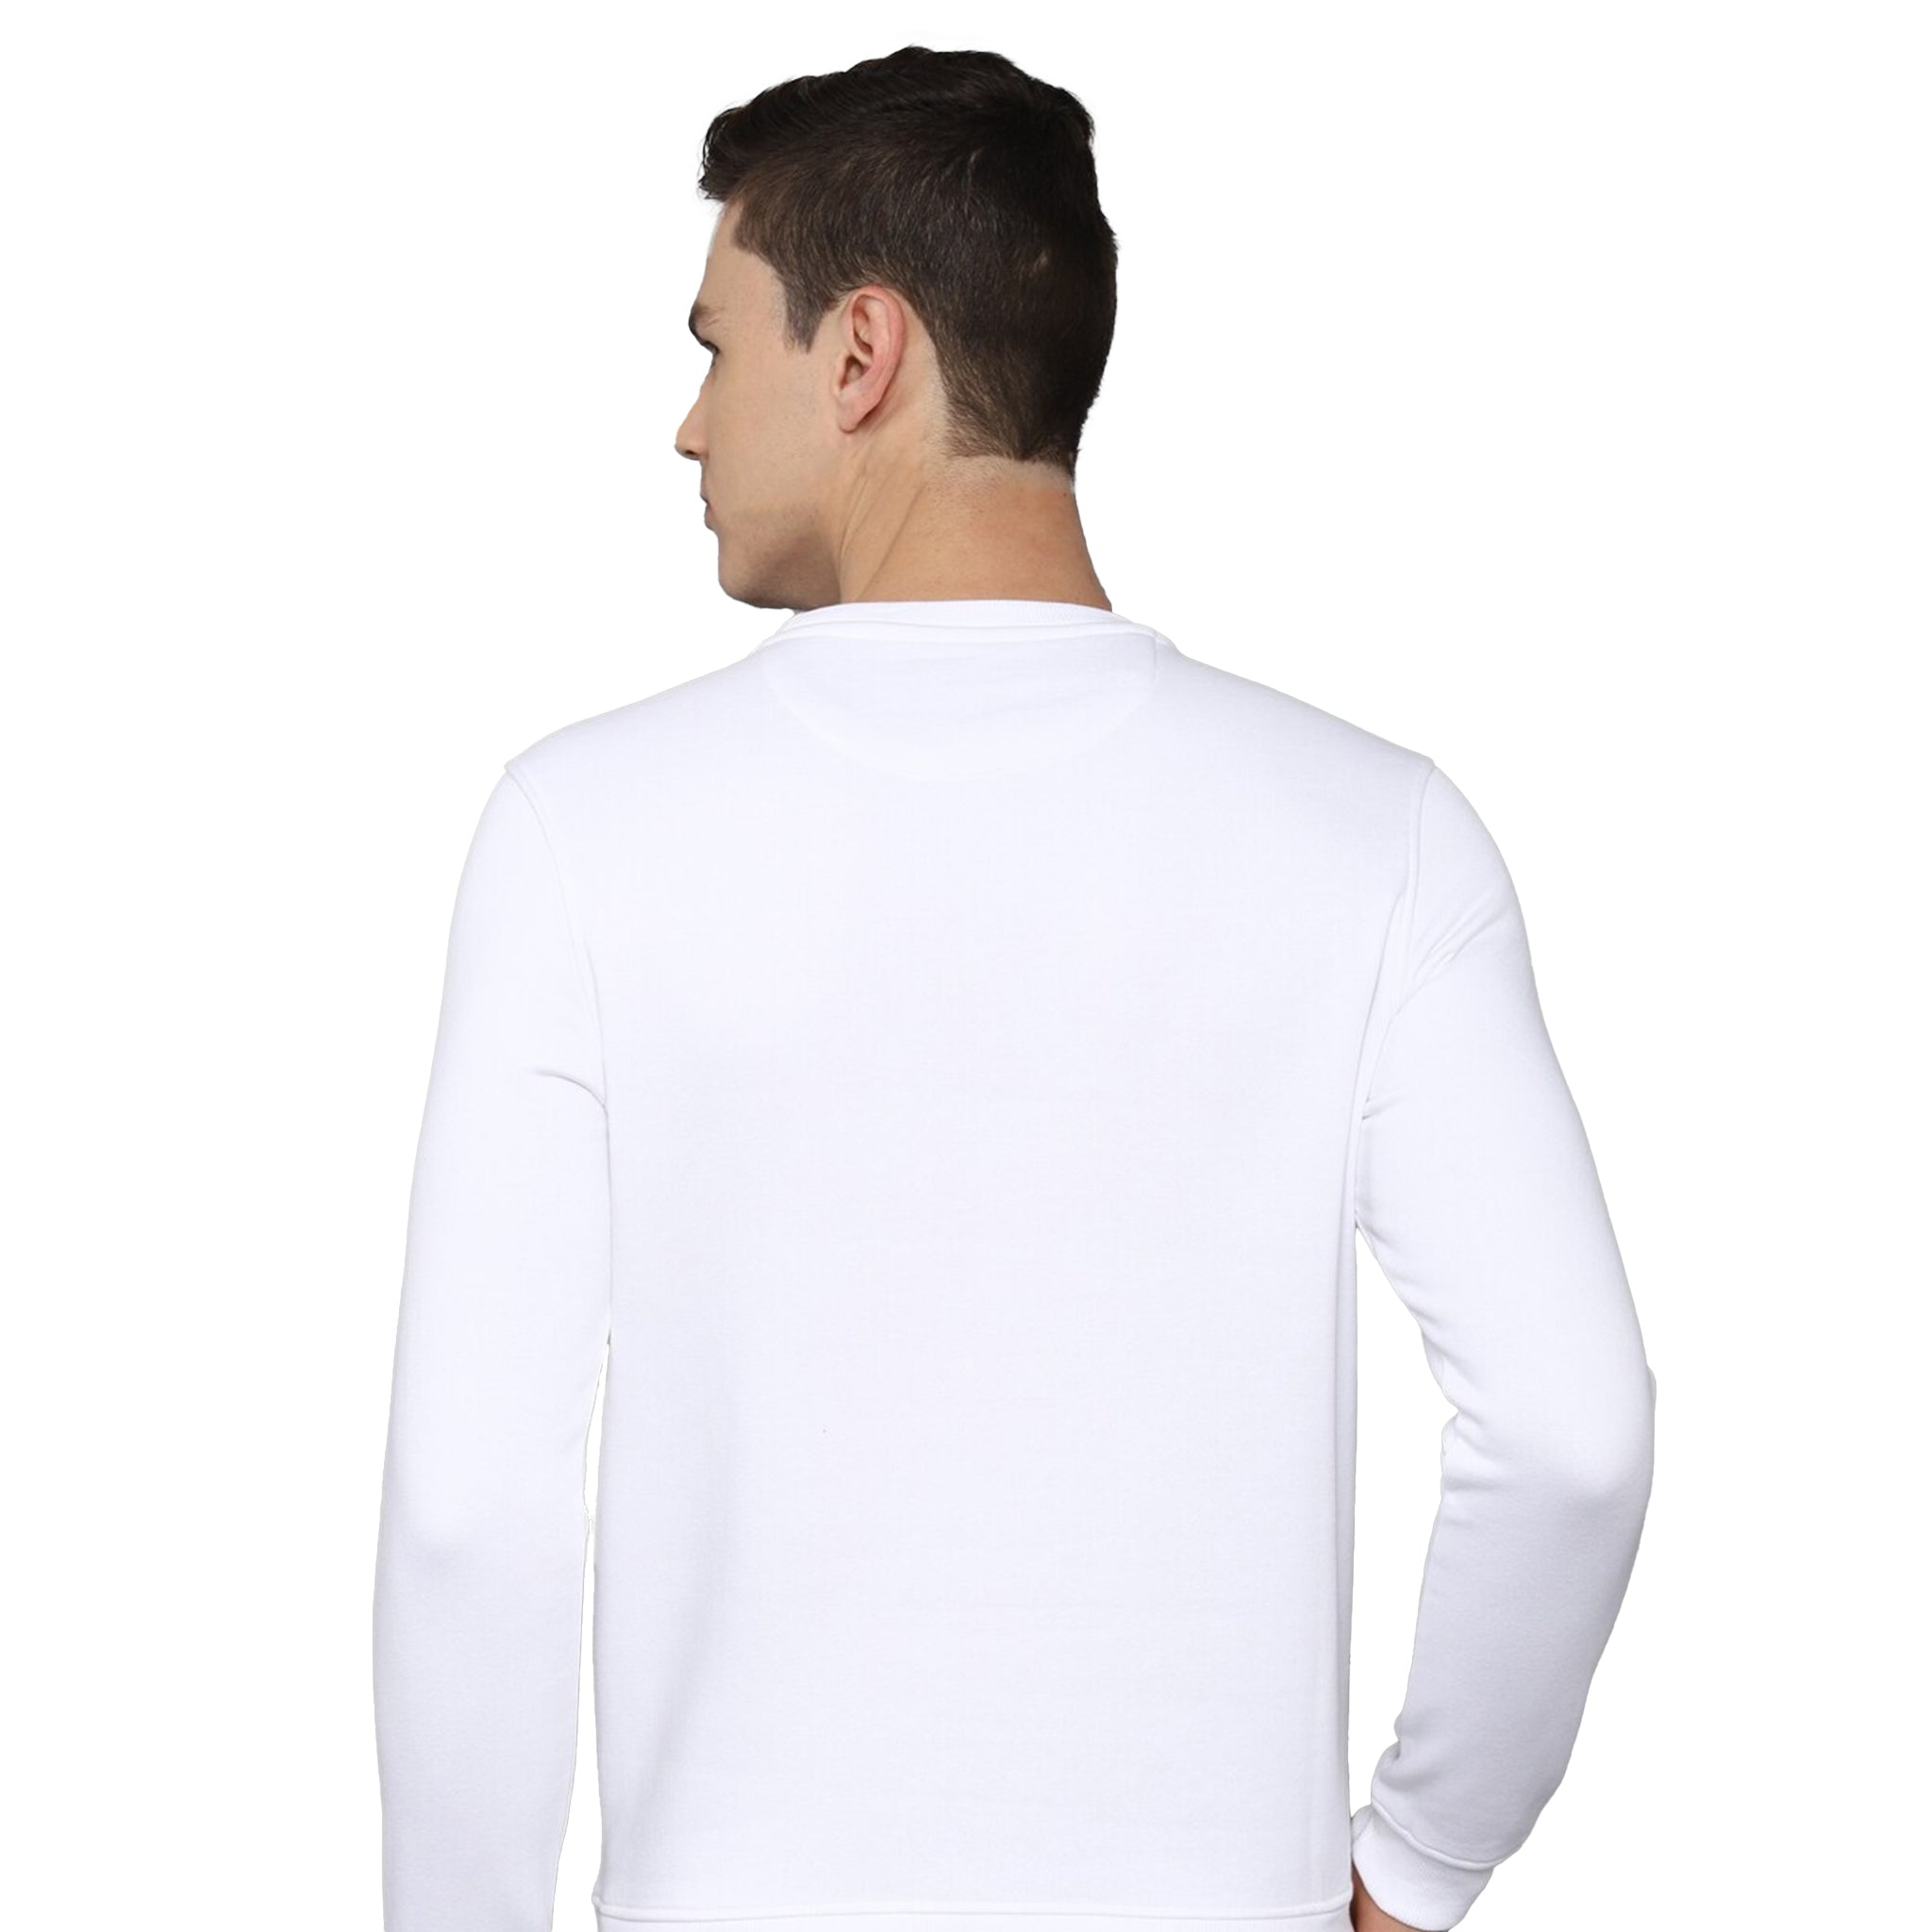 Bizzar's White Sweatshirt